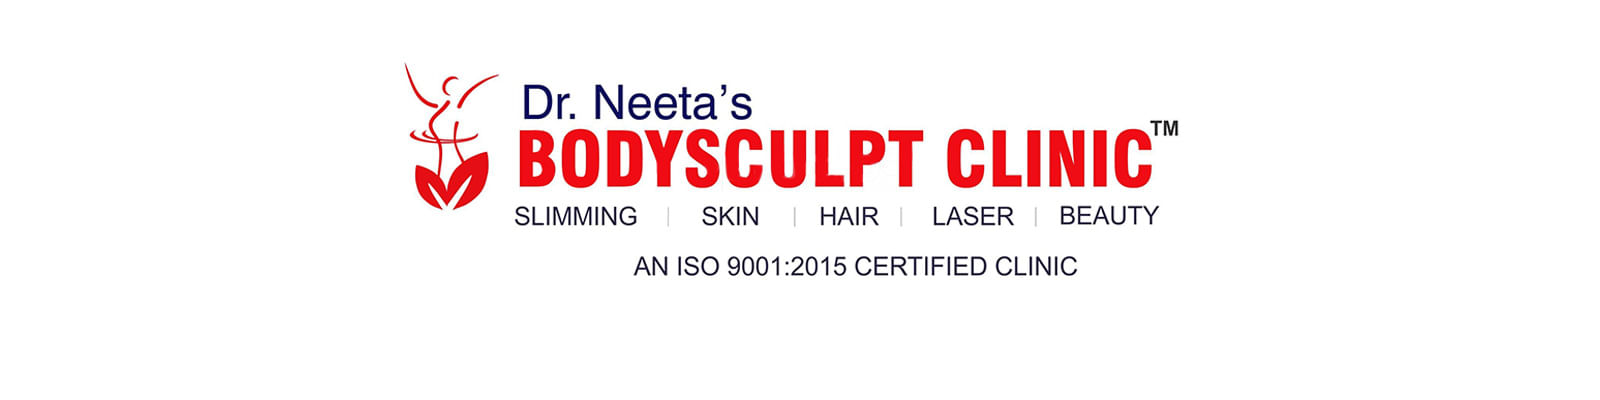 Neeta's Bodysculpt Clinic